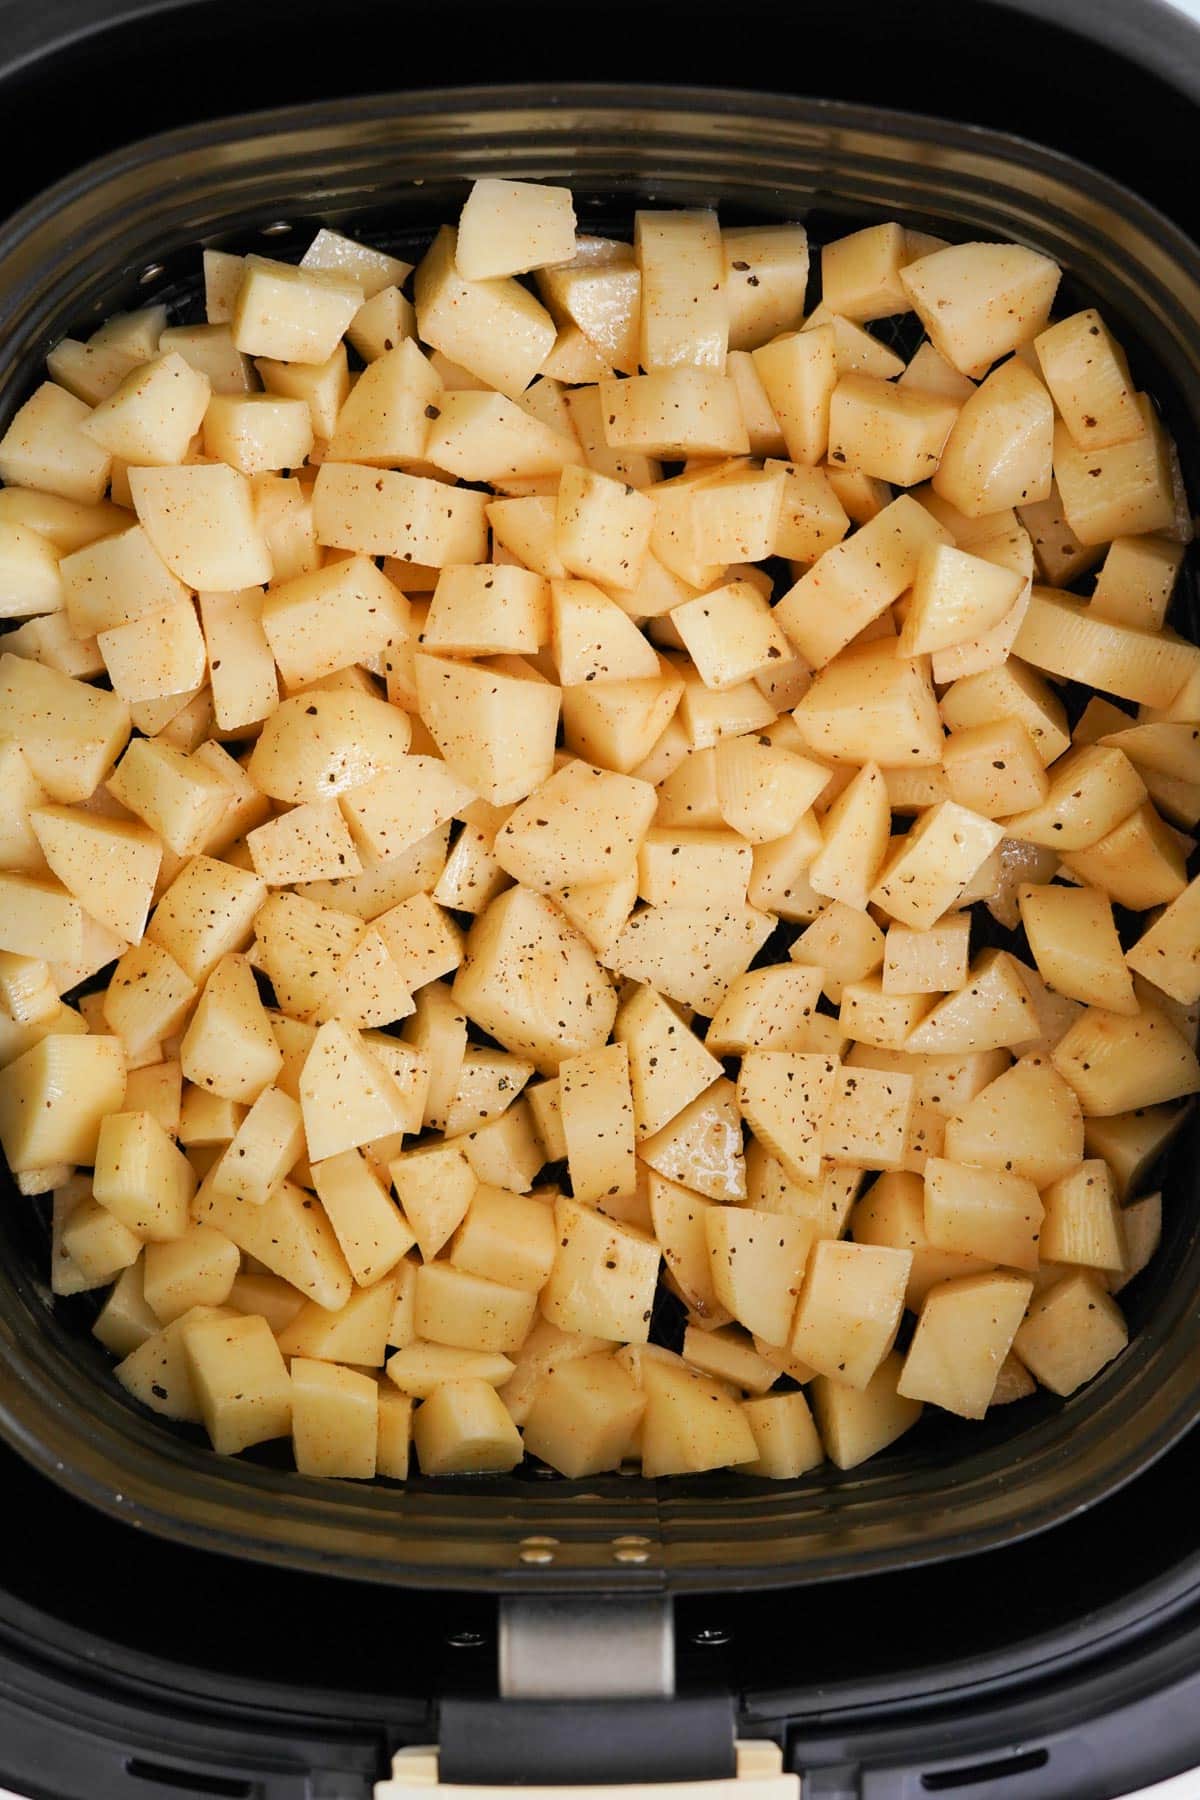 raw cut up potatoes in an air fryer